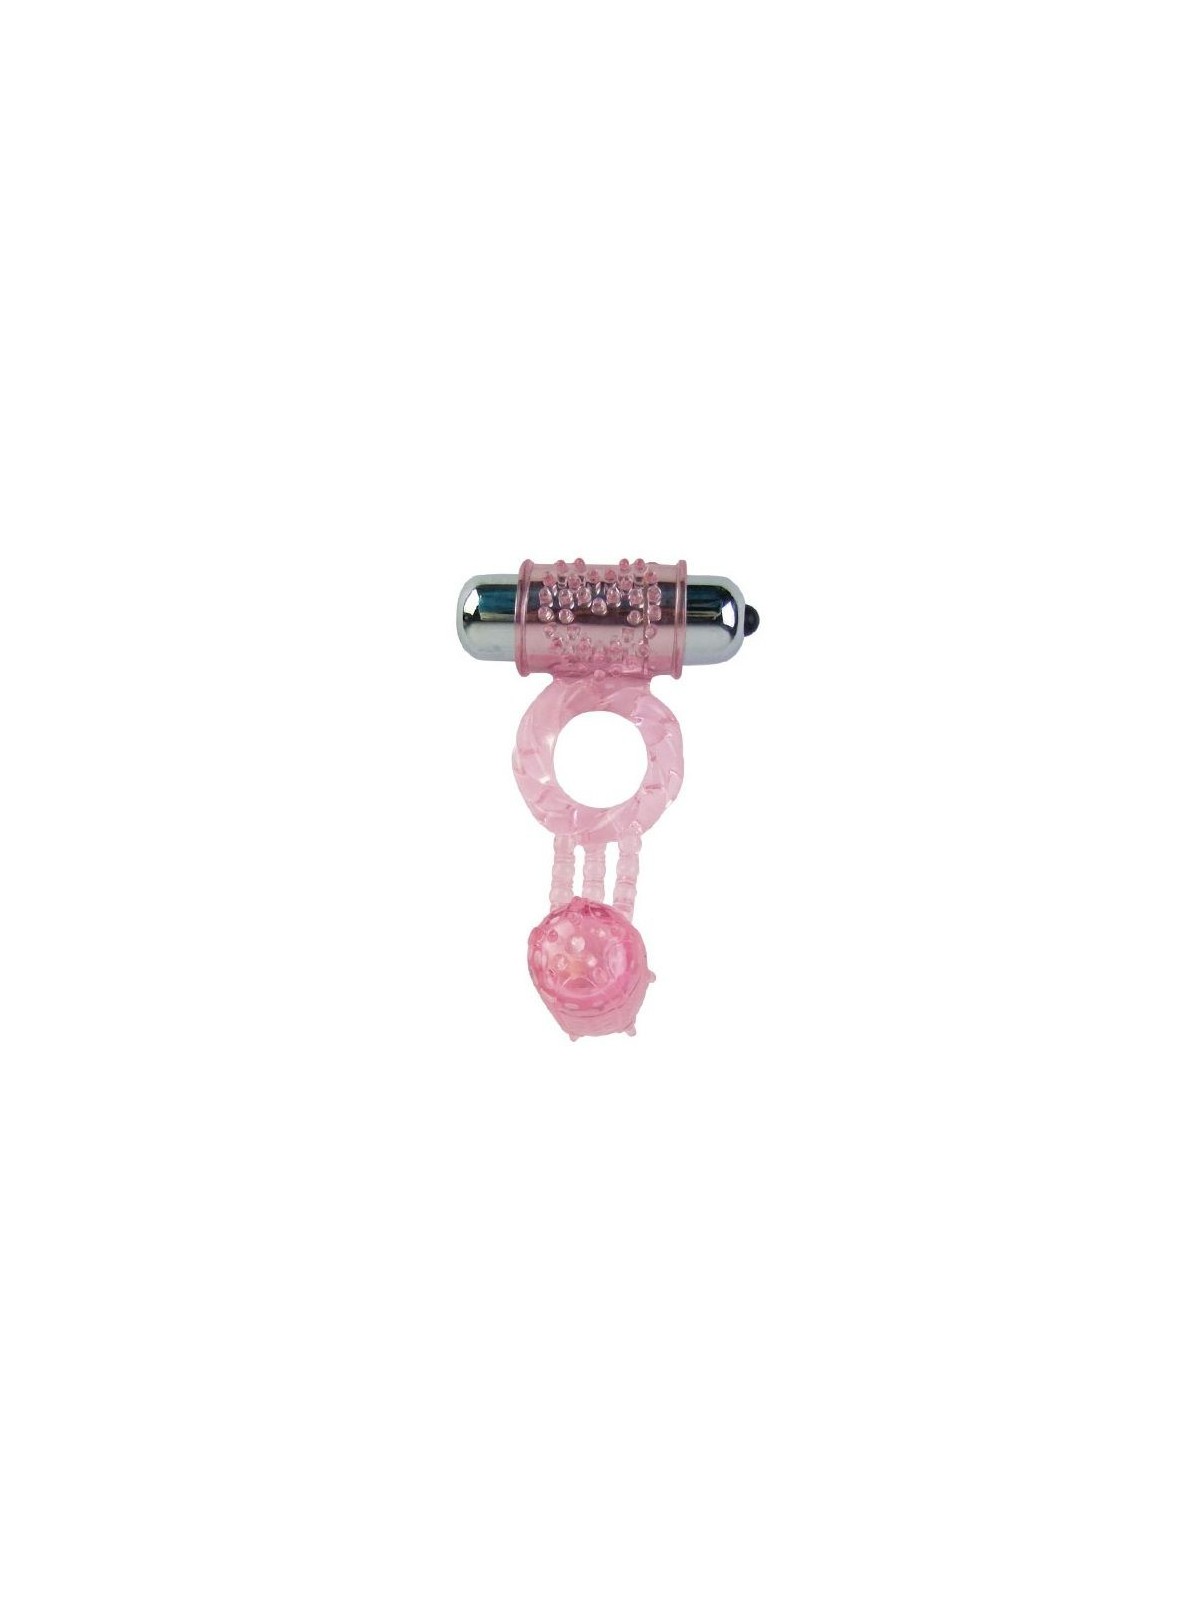 Anillo Silicona Con 10 Ritmos Color Rosa - Comprar Anillo vibrador pene Baile - Anillos vibradores pene (1)